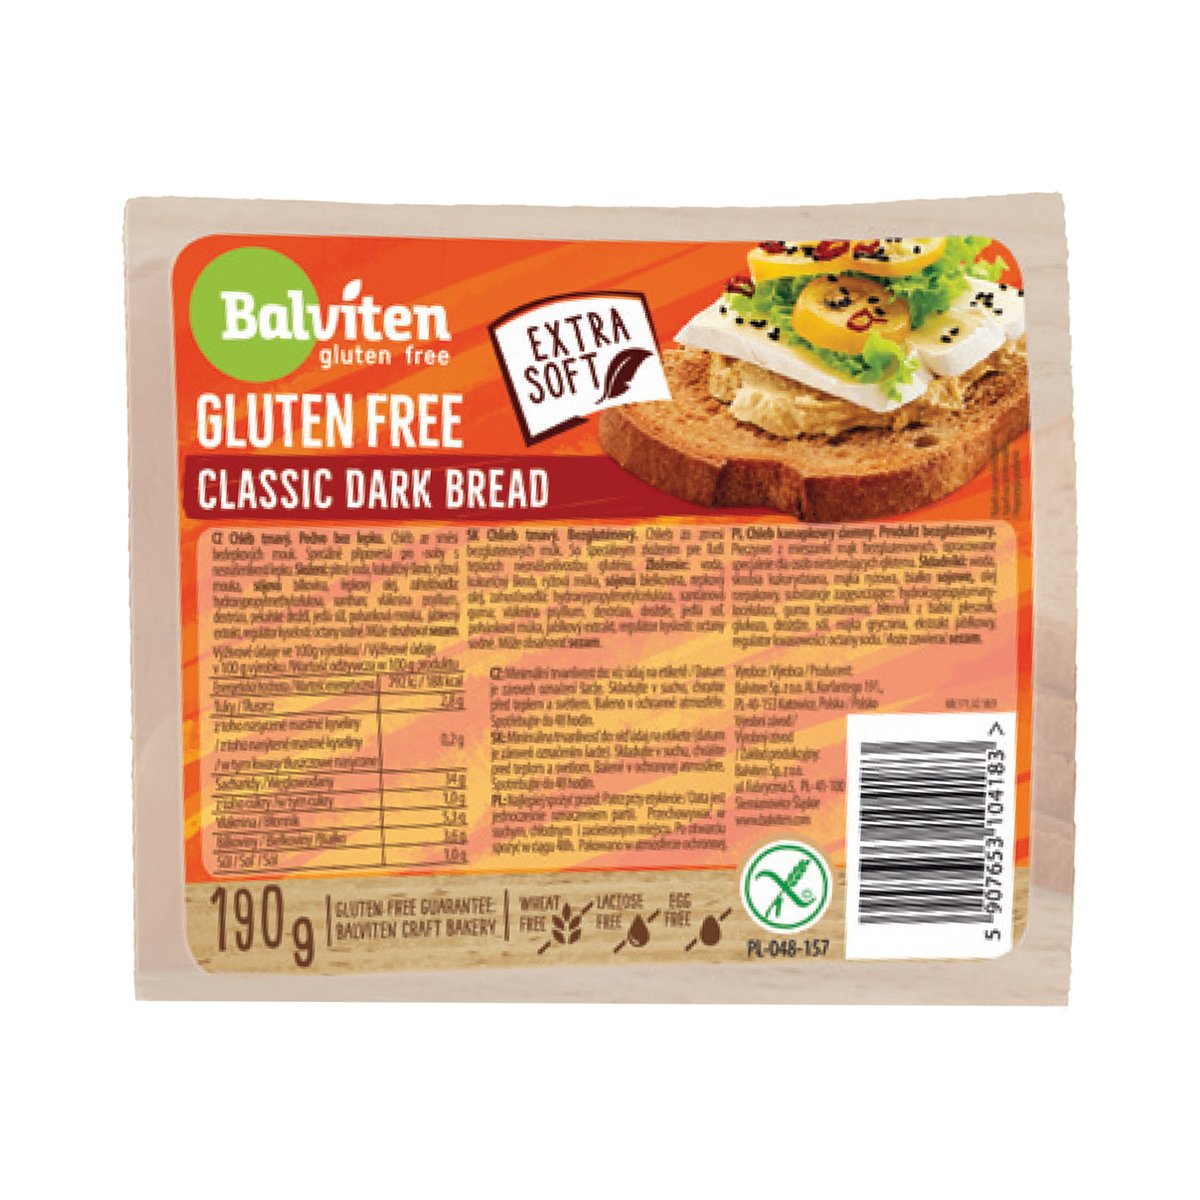 Balviten Classic Dark Bread Gluten Free 190 g